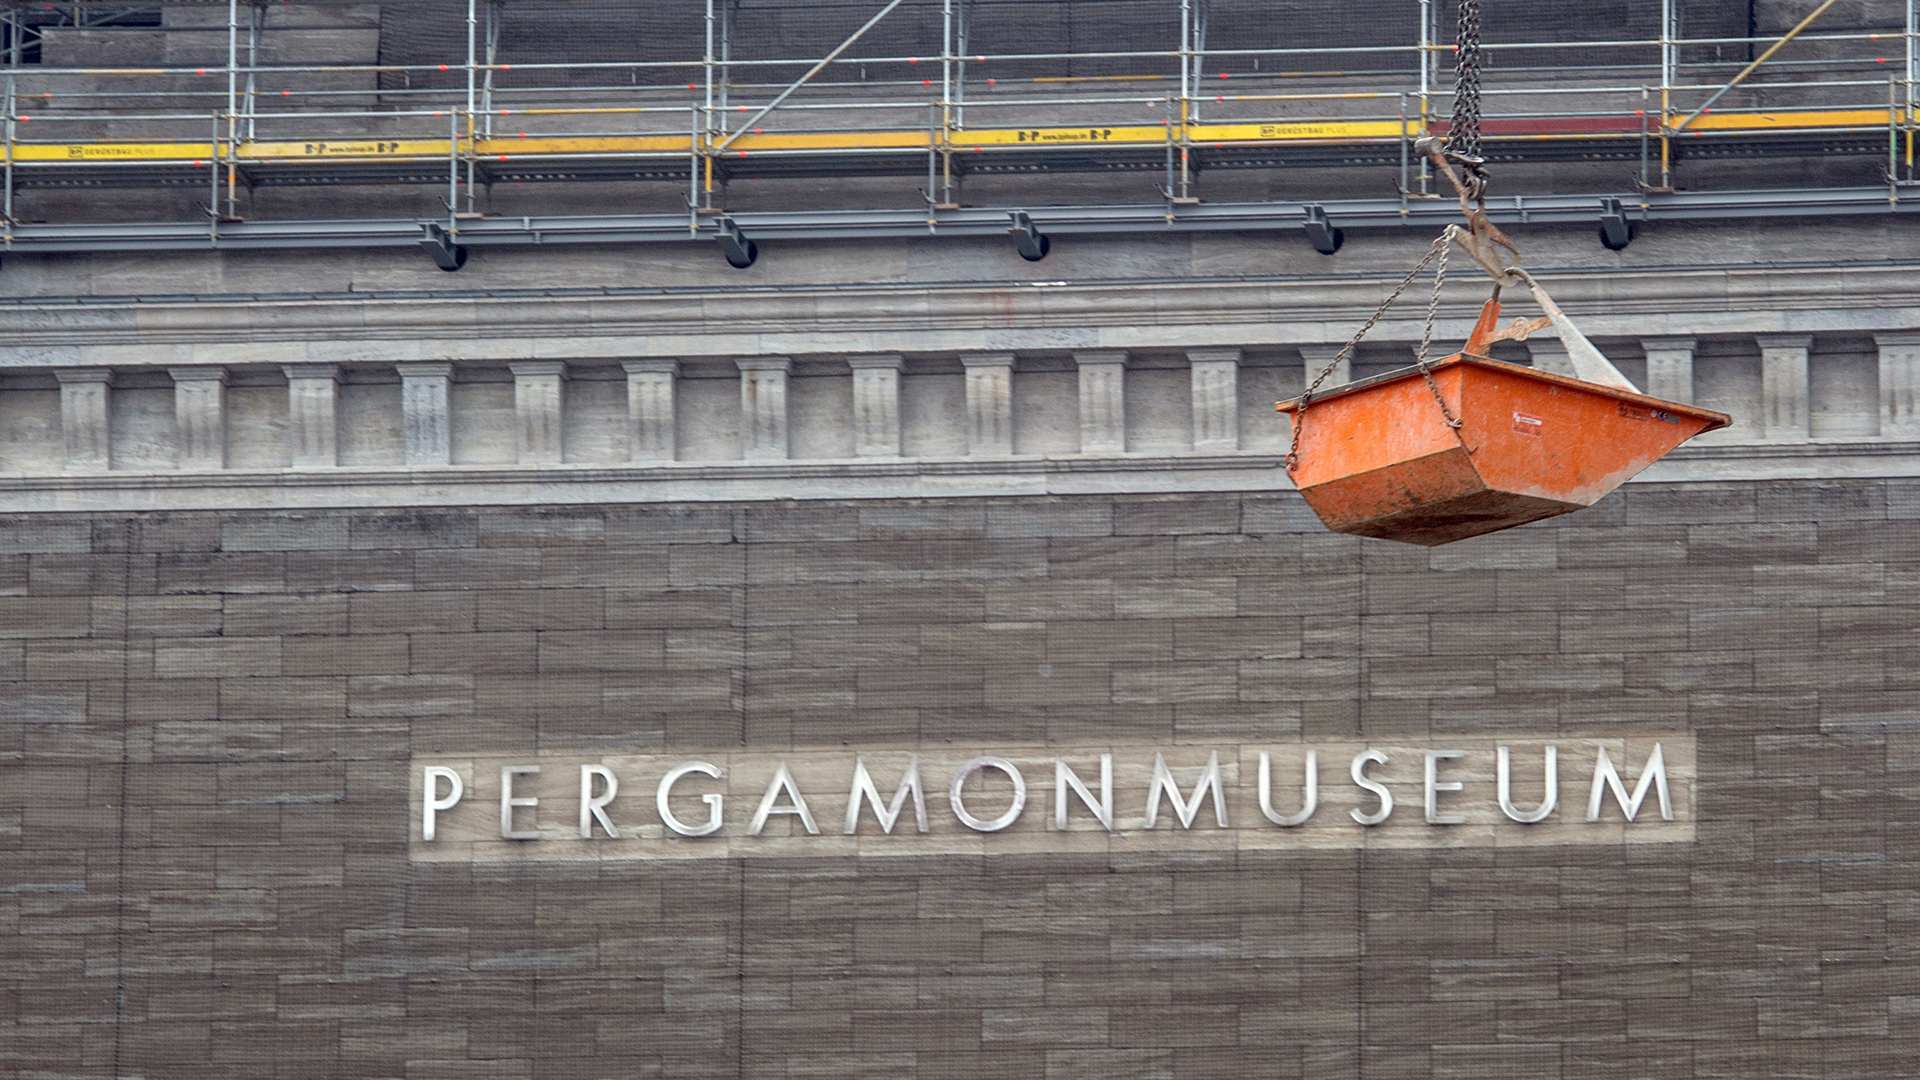 "Pergamonmuseum" steht in Berlin auf der AuÃenfassade des Museums. (Archivbild: 08.11.2016) | picture alliance / dpa